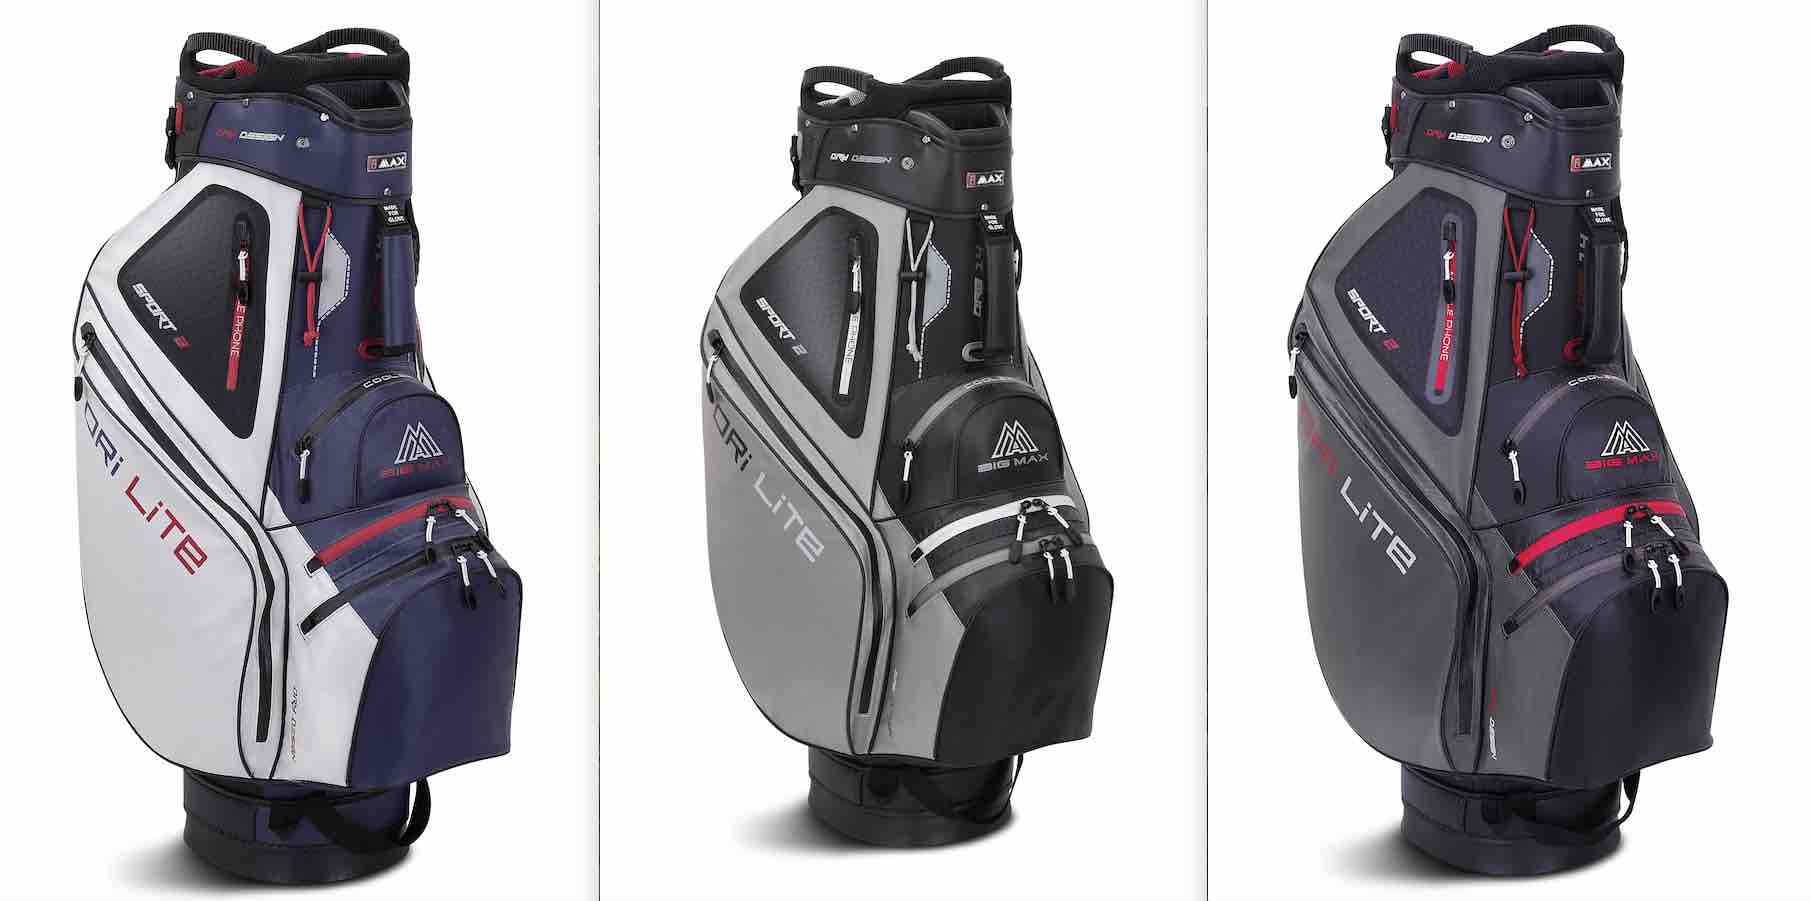 Das sind drei weitere Farbkombinationen des Golfbag, die zur Auswahl stehen